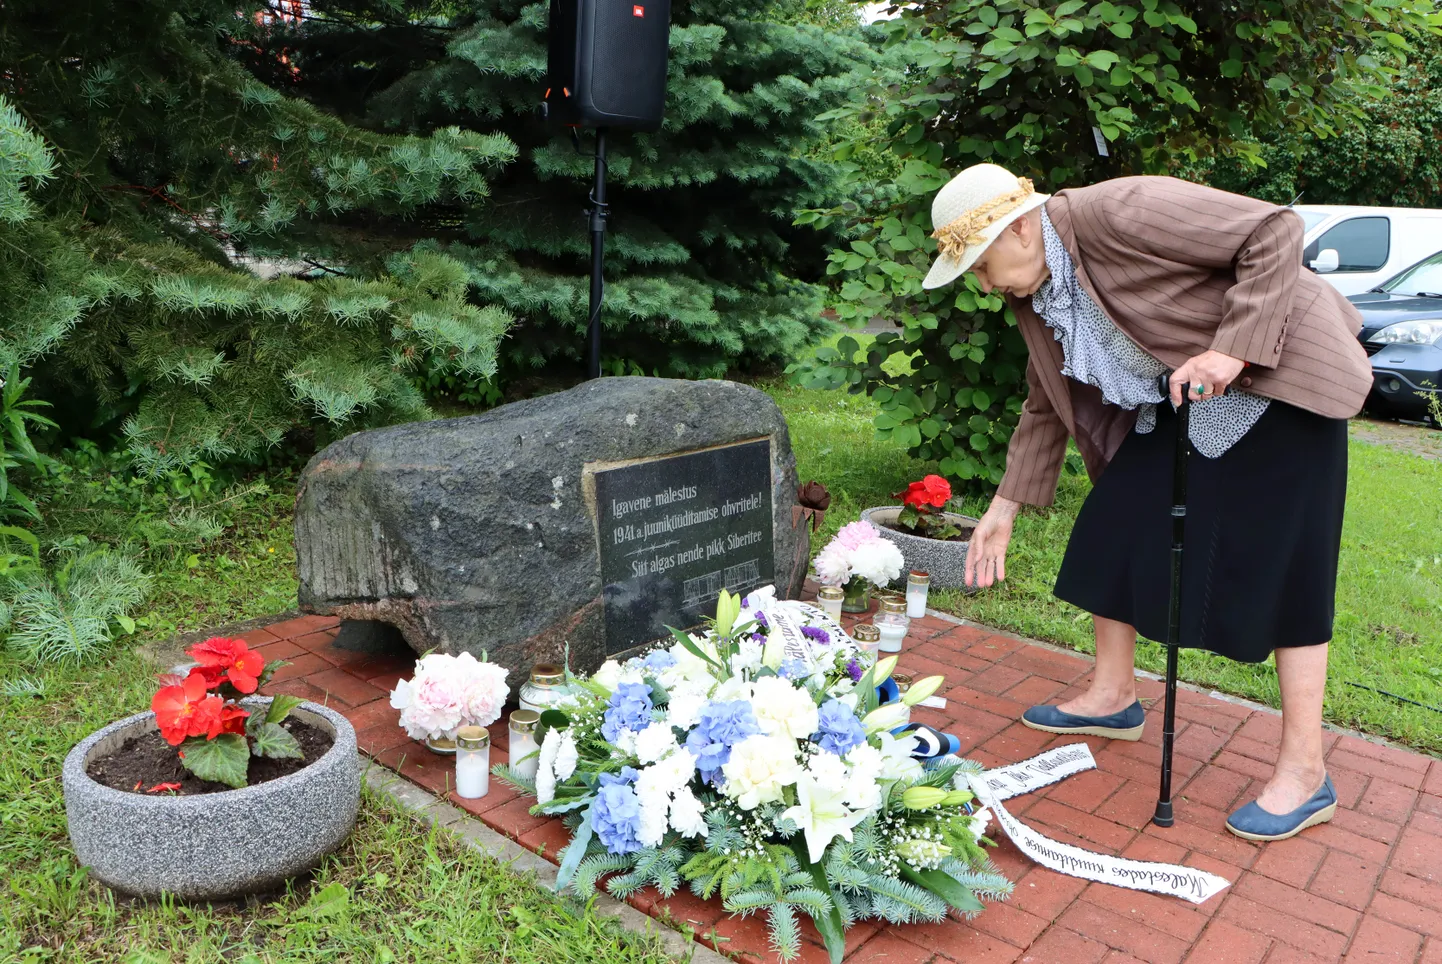 Поминовение жертв июньской депортации состоялось также 14 июня около памятного камня, установленного в Йыхви рядом с железнодорожной станцией.